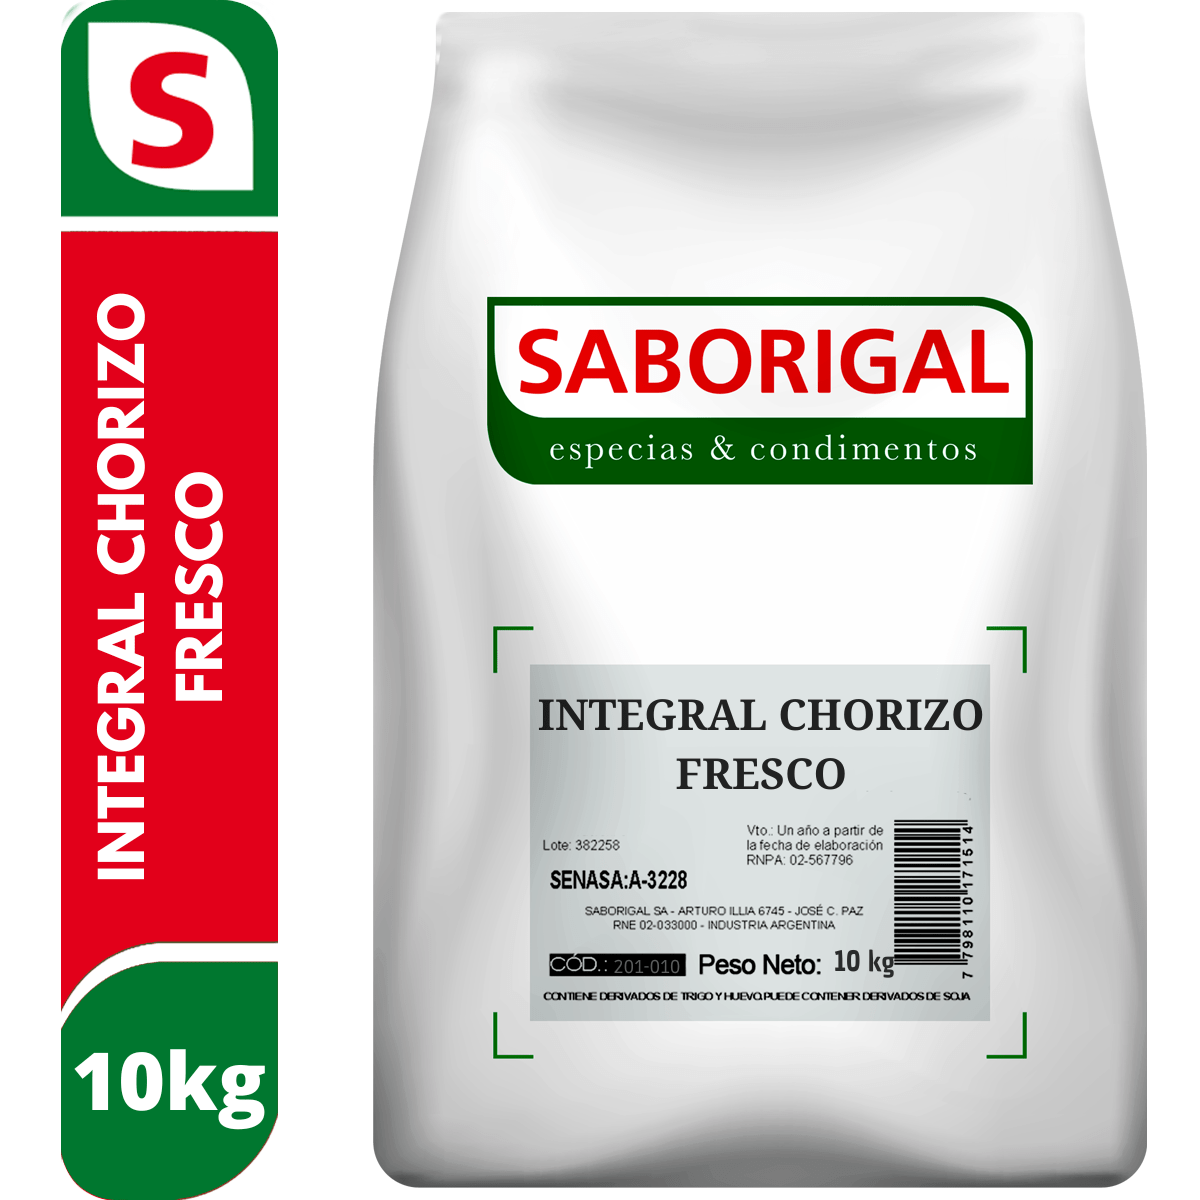 Integral chorizo fresco 10 kg